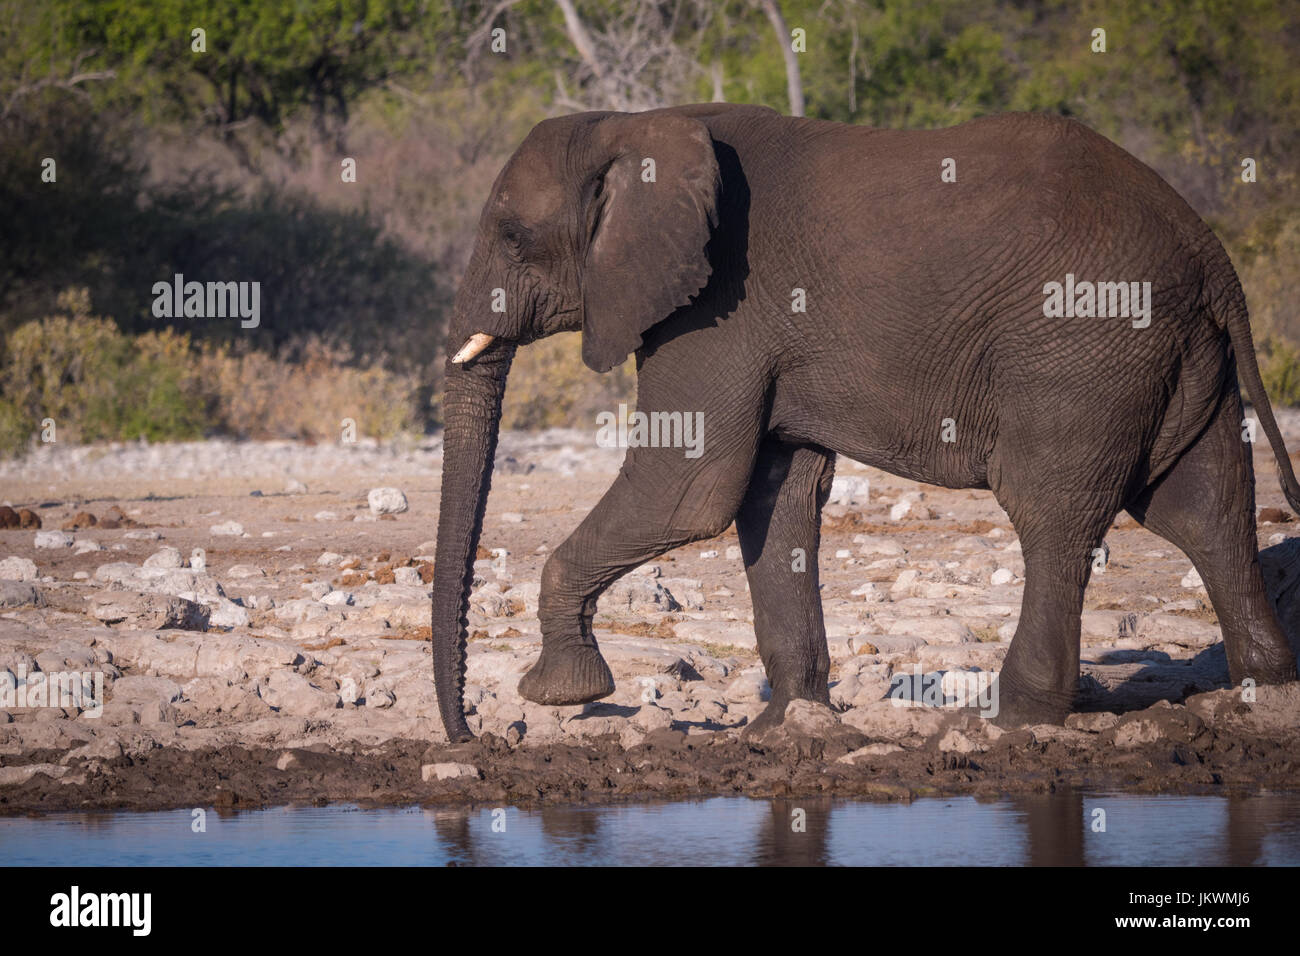 Elephant in Etosha National Park waterhole, Namibia, Africa Stock Photo